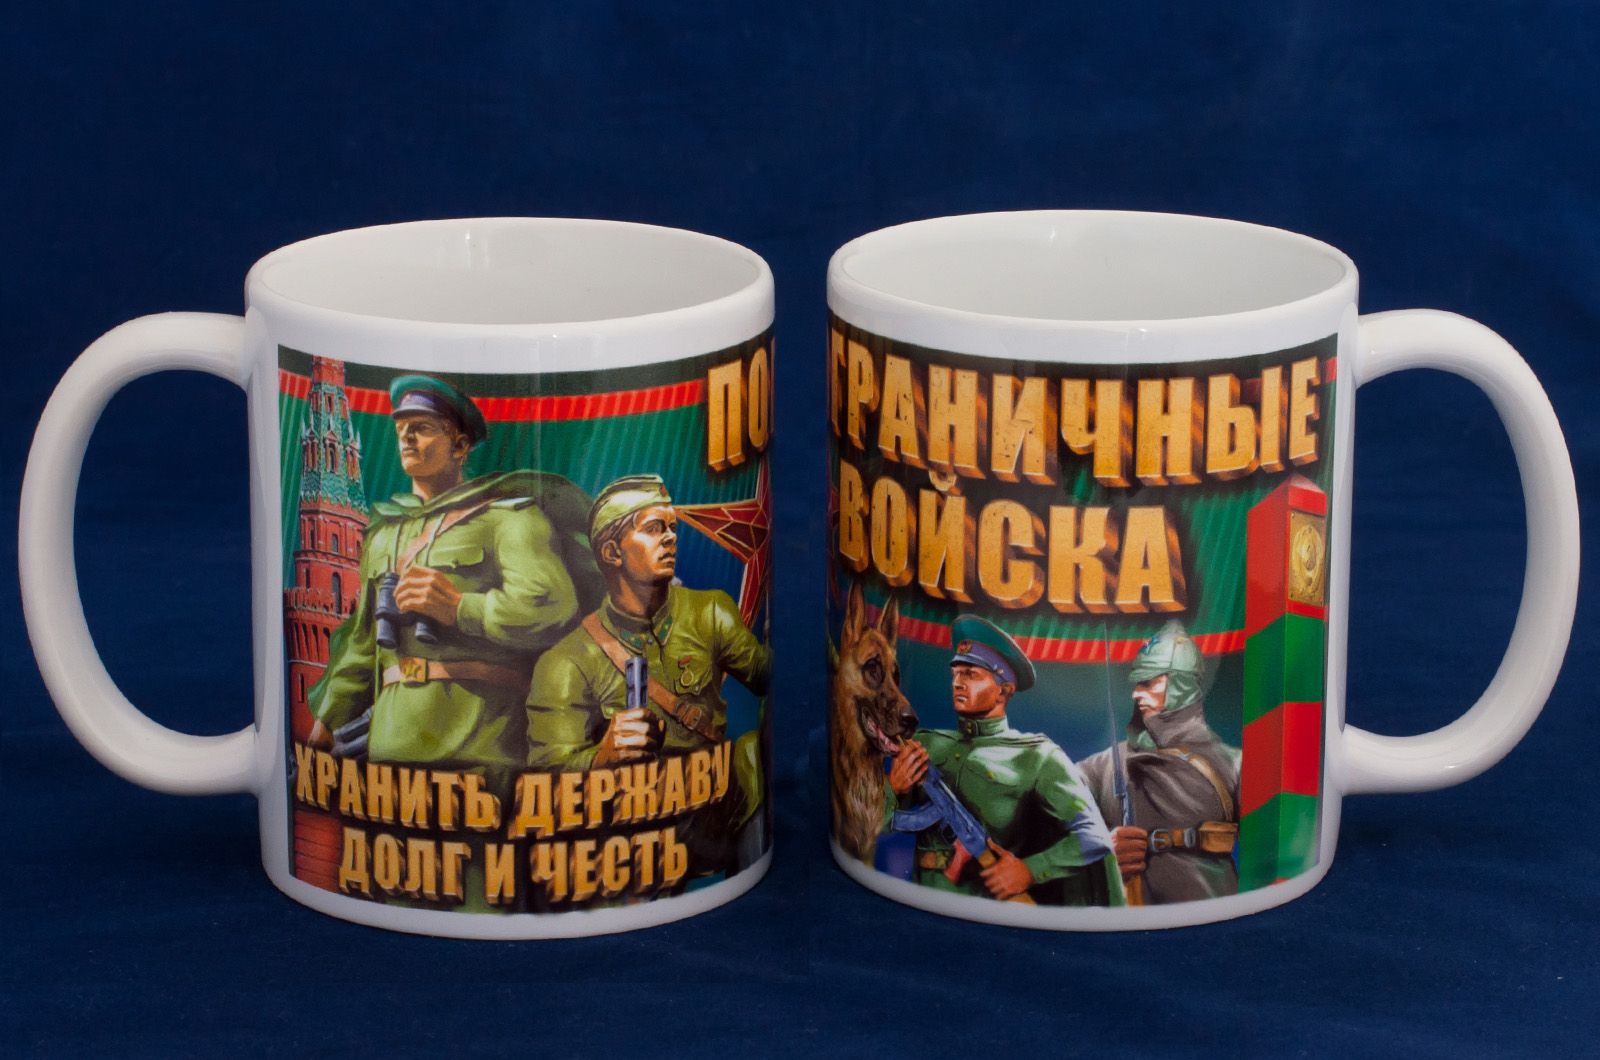 Купить кружку "Пограничные войска" в интернет-магазине Военпро